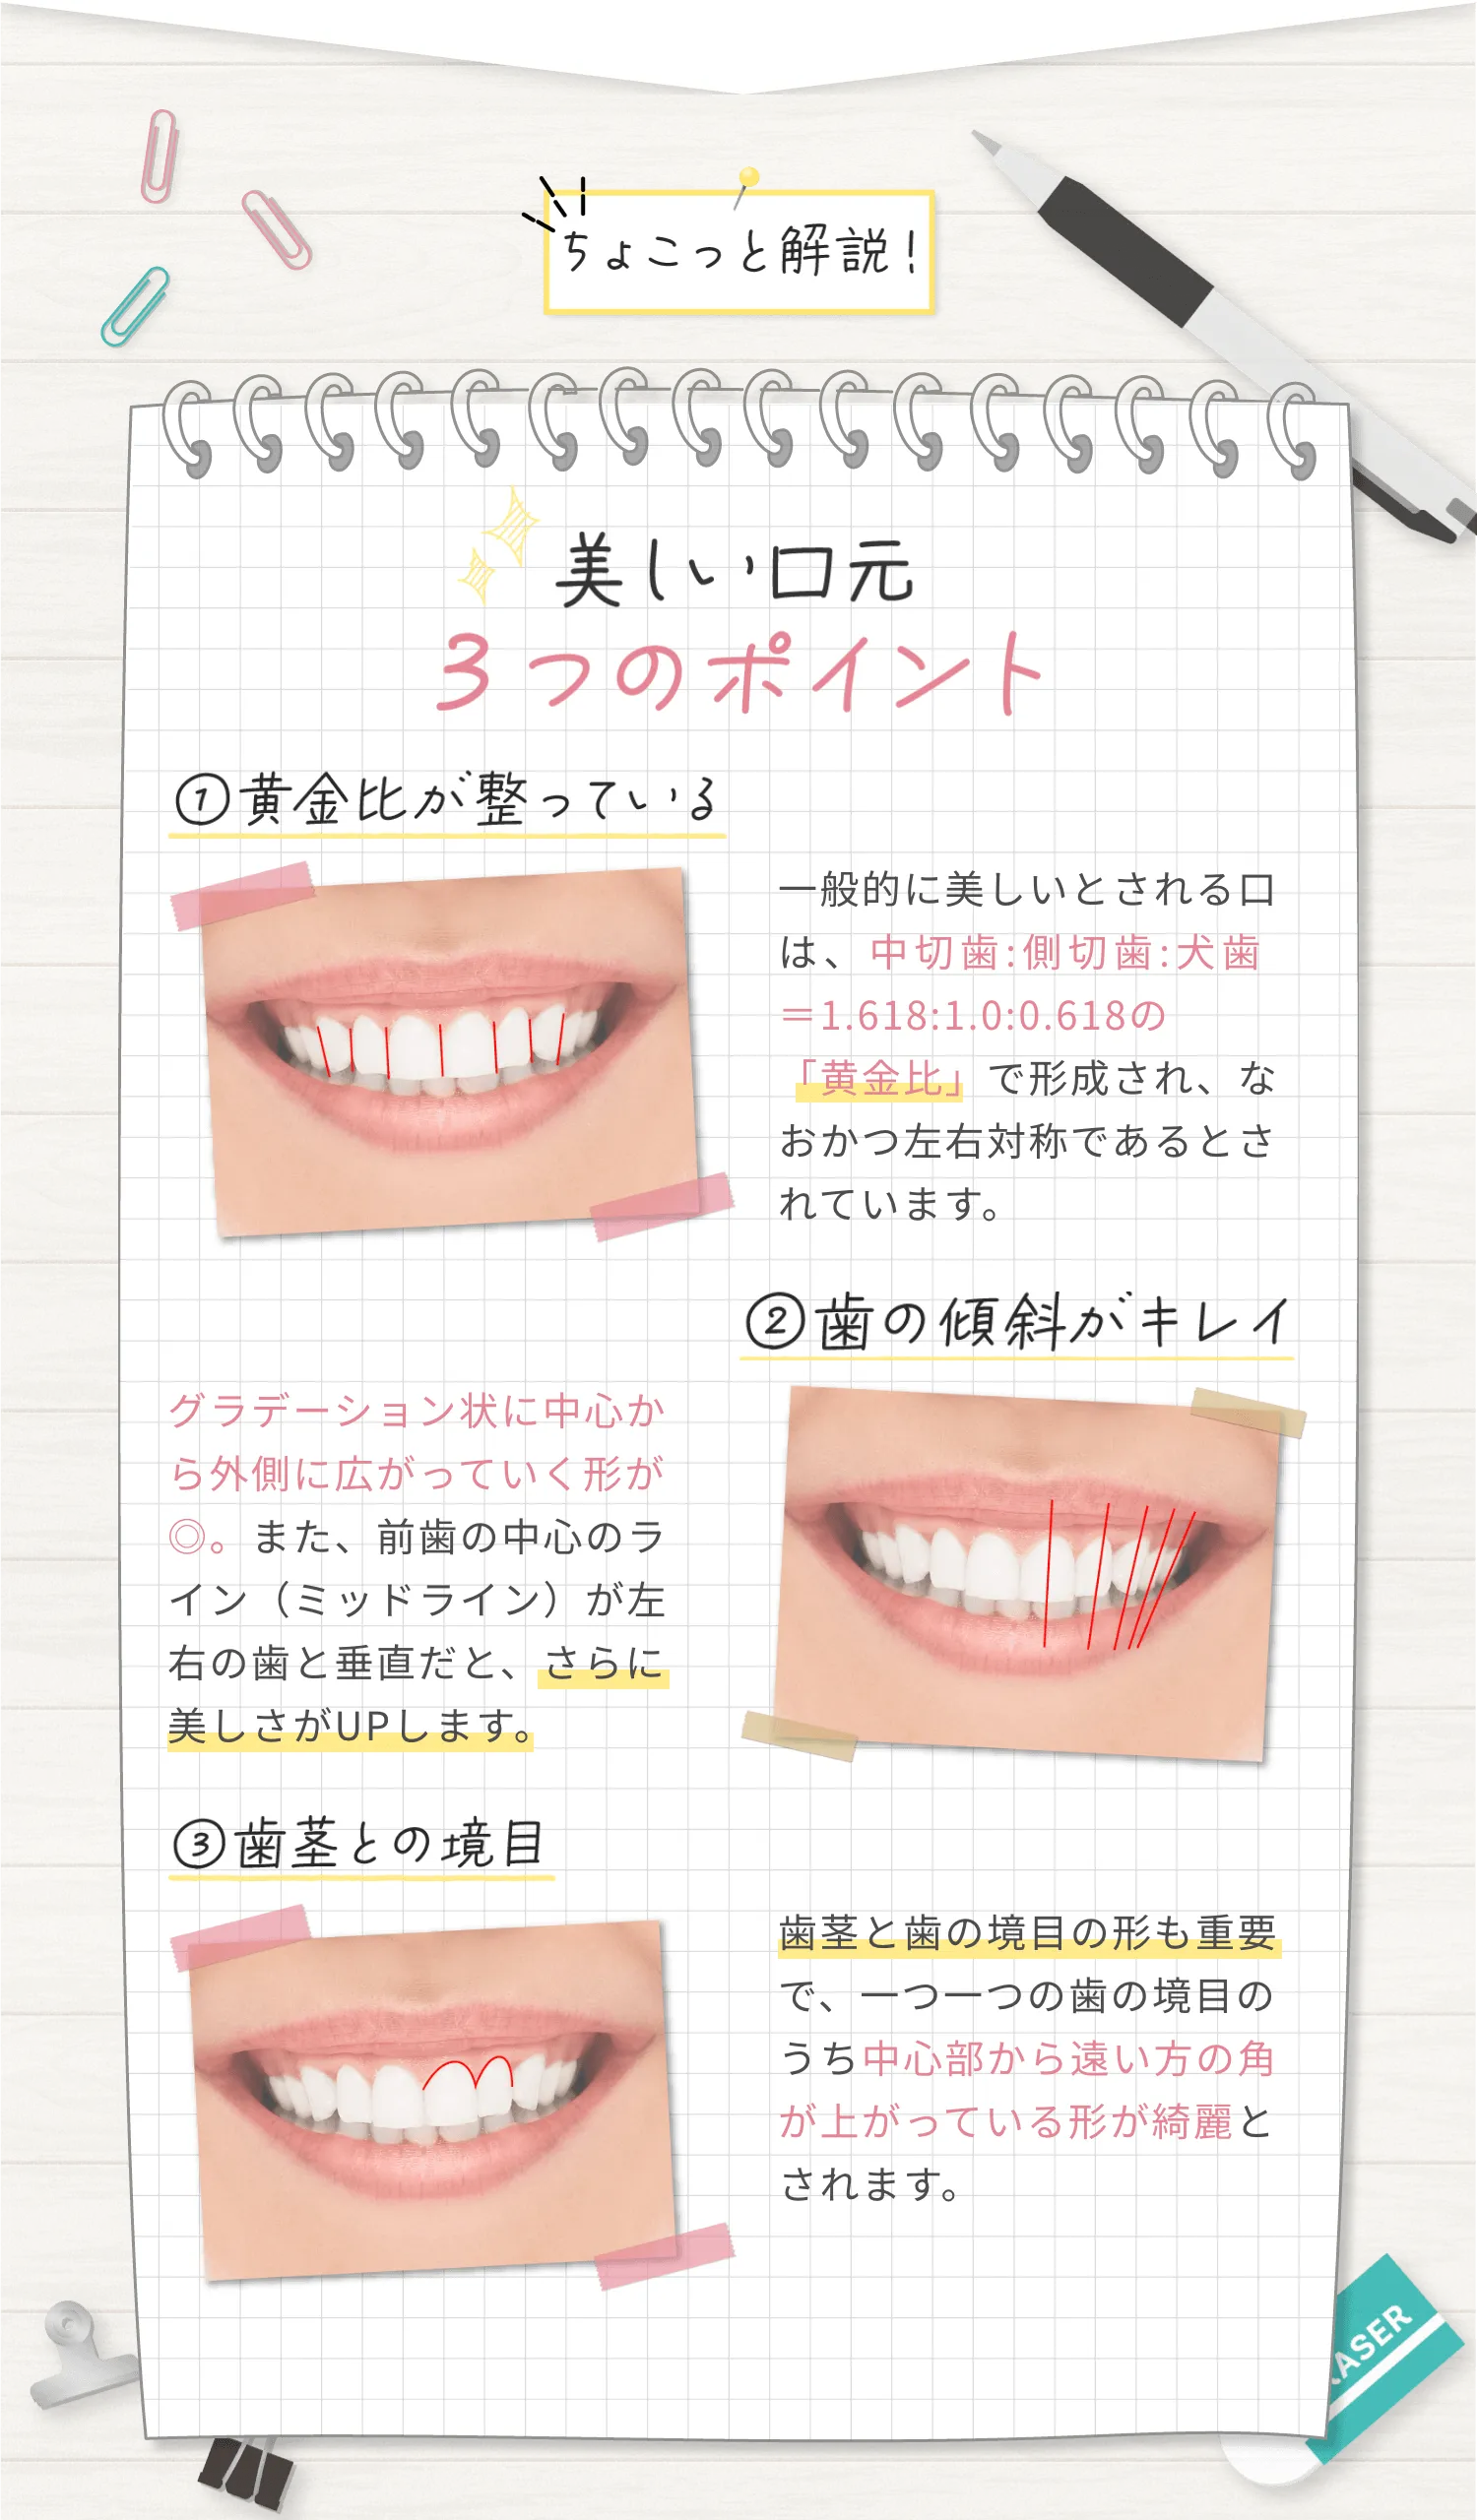 美しい口元3つのポイント,黄金比が整っている,歯の斜傾がキレイ,歯茎との境目